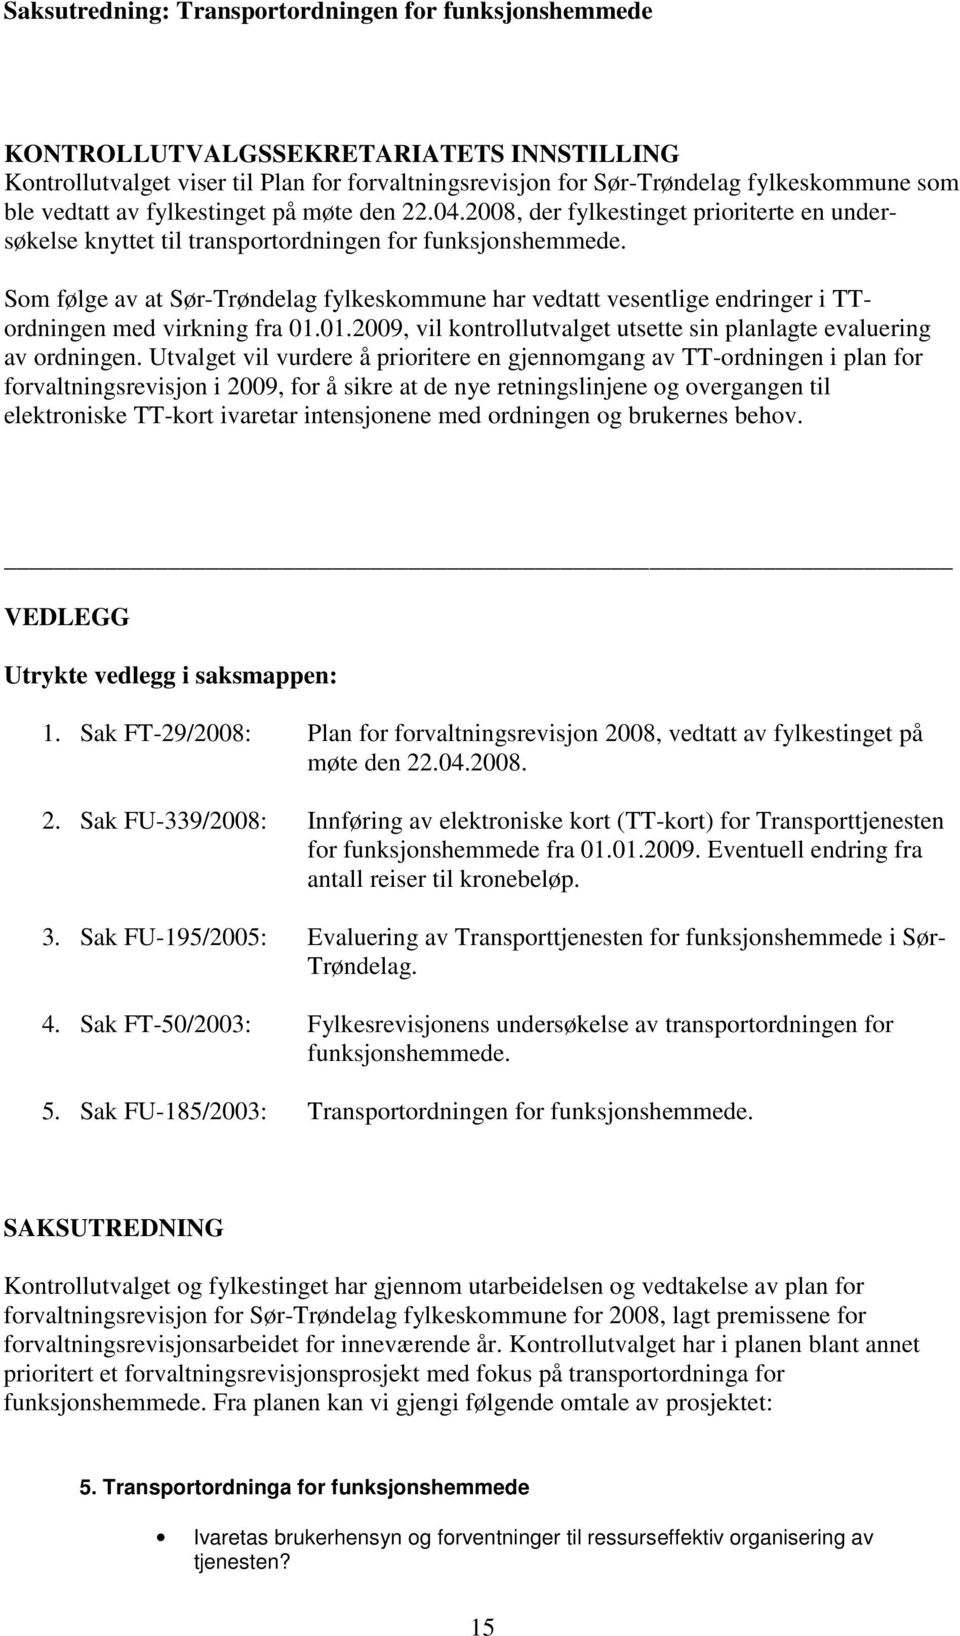 Som følge av at Sør-Trøndelag fylkeskommune har vedtatt vesentlige endringer i TTordningen med virkning fra 01.01.2009, vil kontrollutvalget utsette sin planlagte evaluering av ordningen.